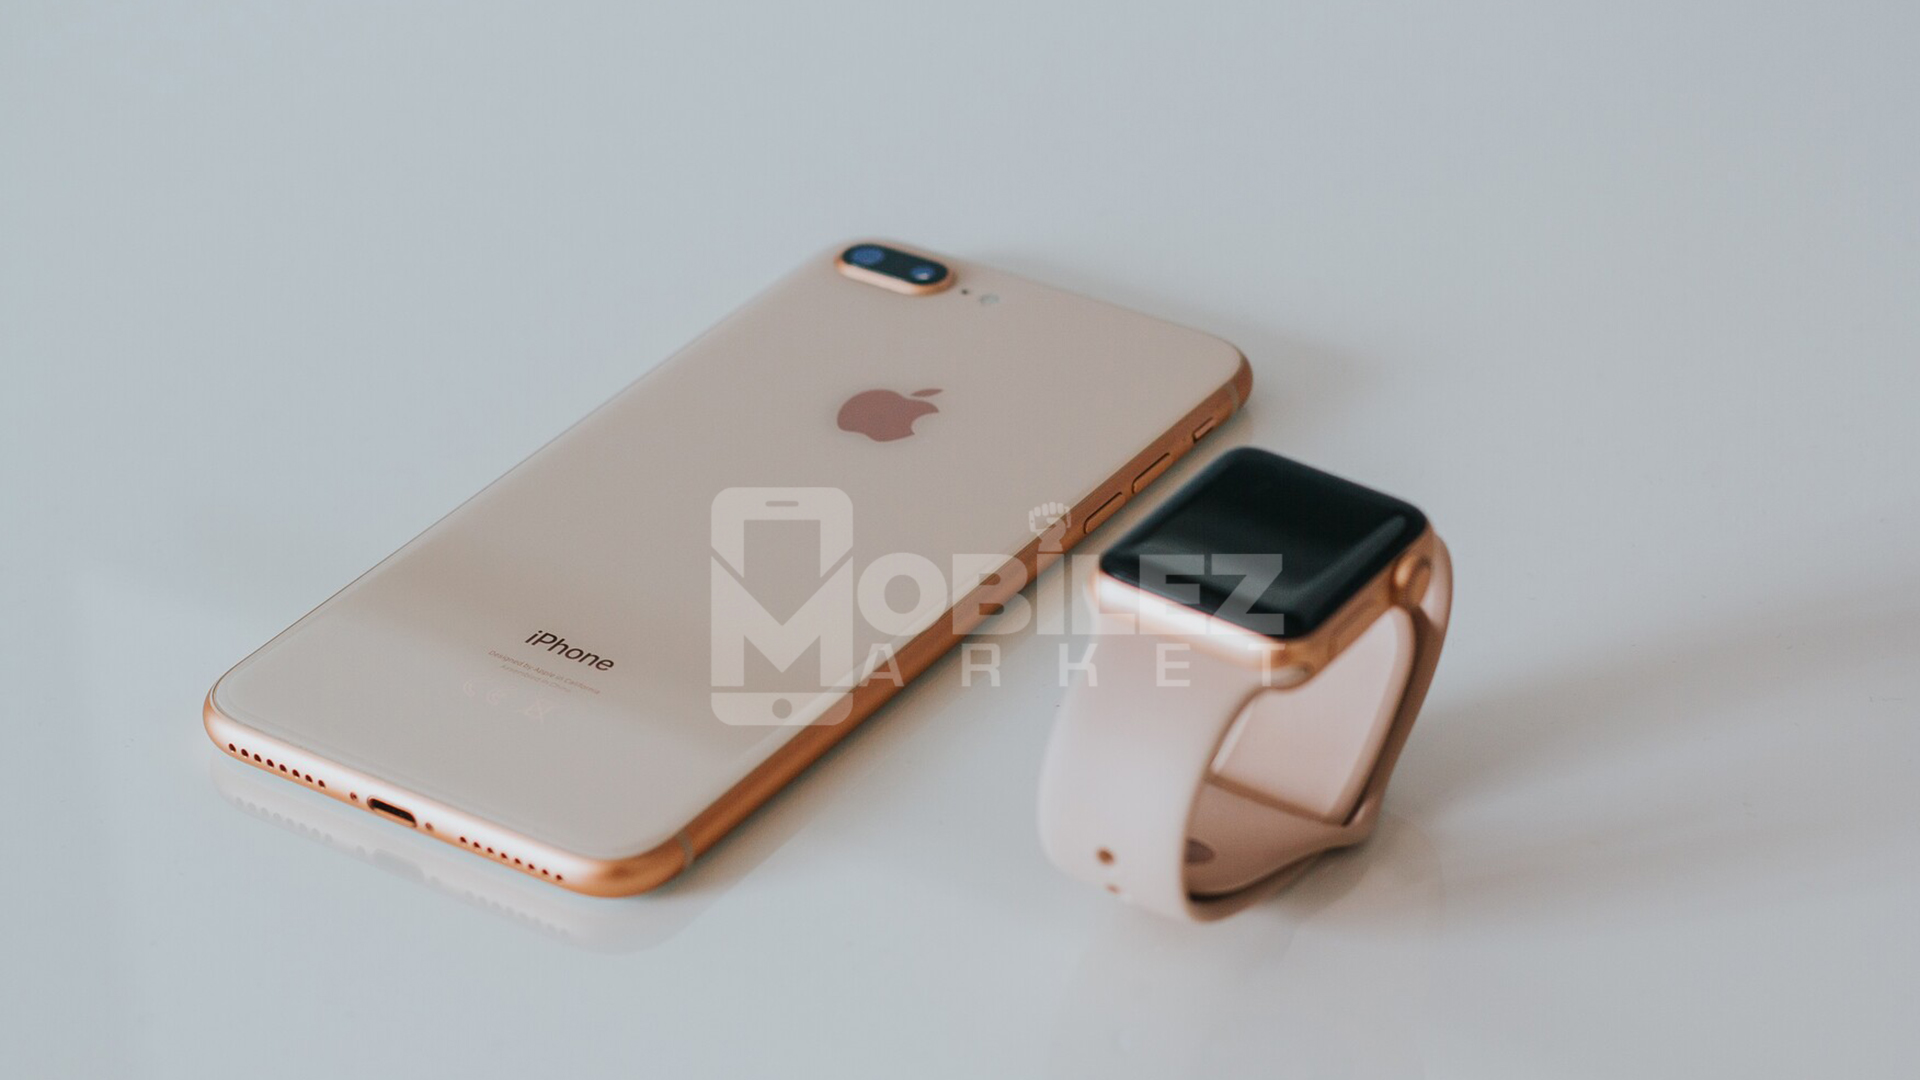 Buy Apple Watch Series 3 Online | Buy Broken iPhones Online